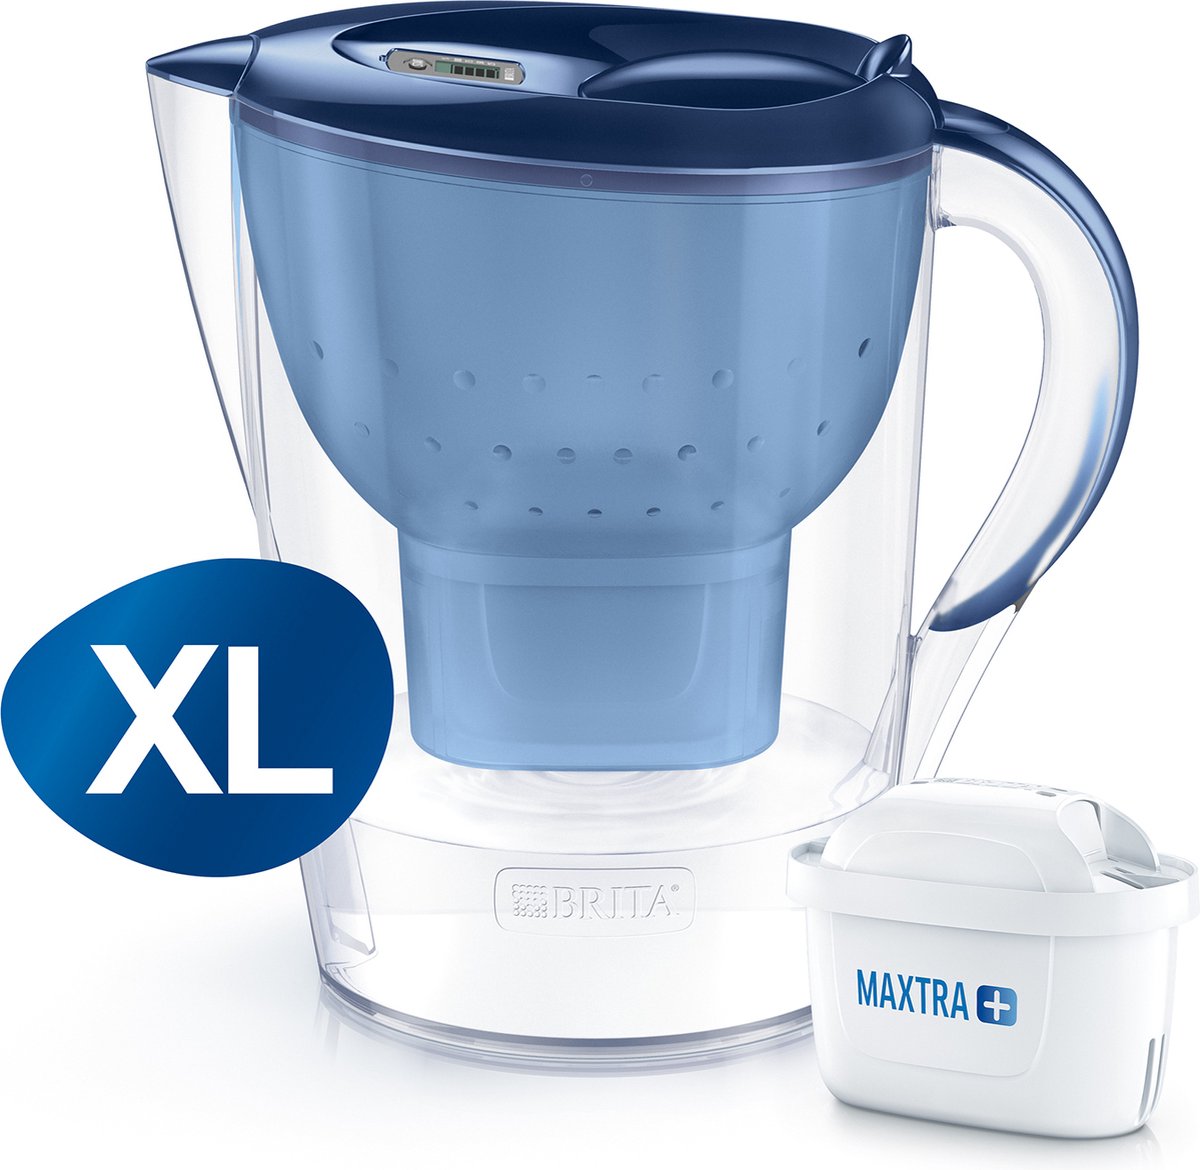 BRITA Waterfilterkan - Marella XL - 3,5L - Blauw - incl. 1 MAXTRA+ waterfilterpatroon - BRITA